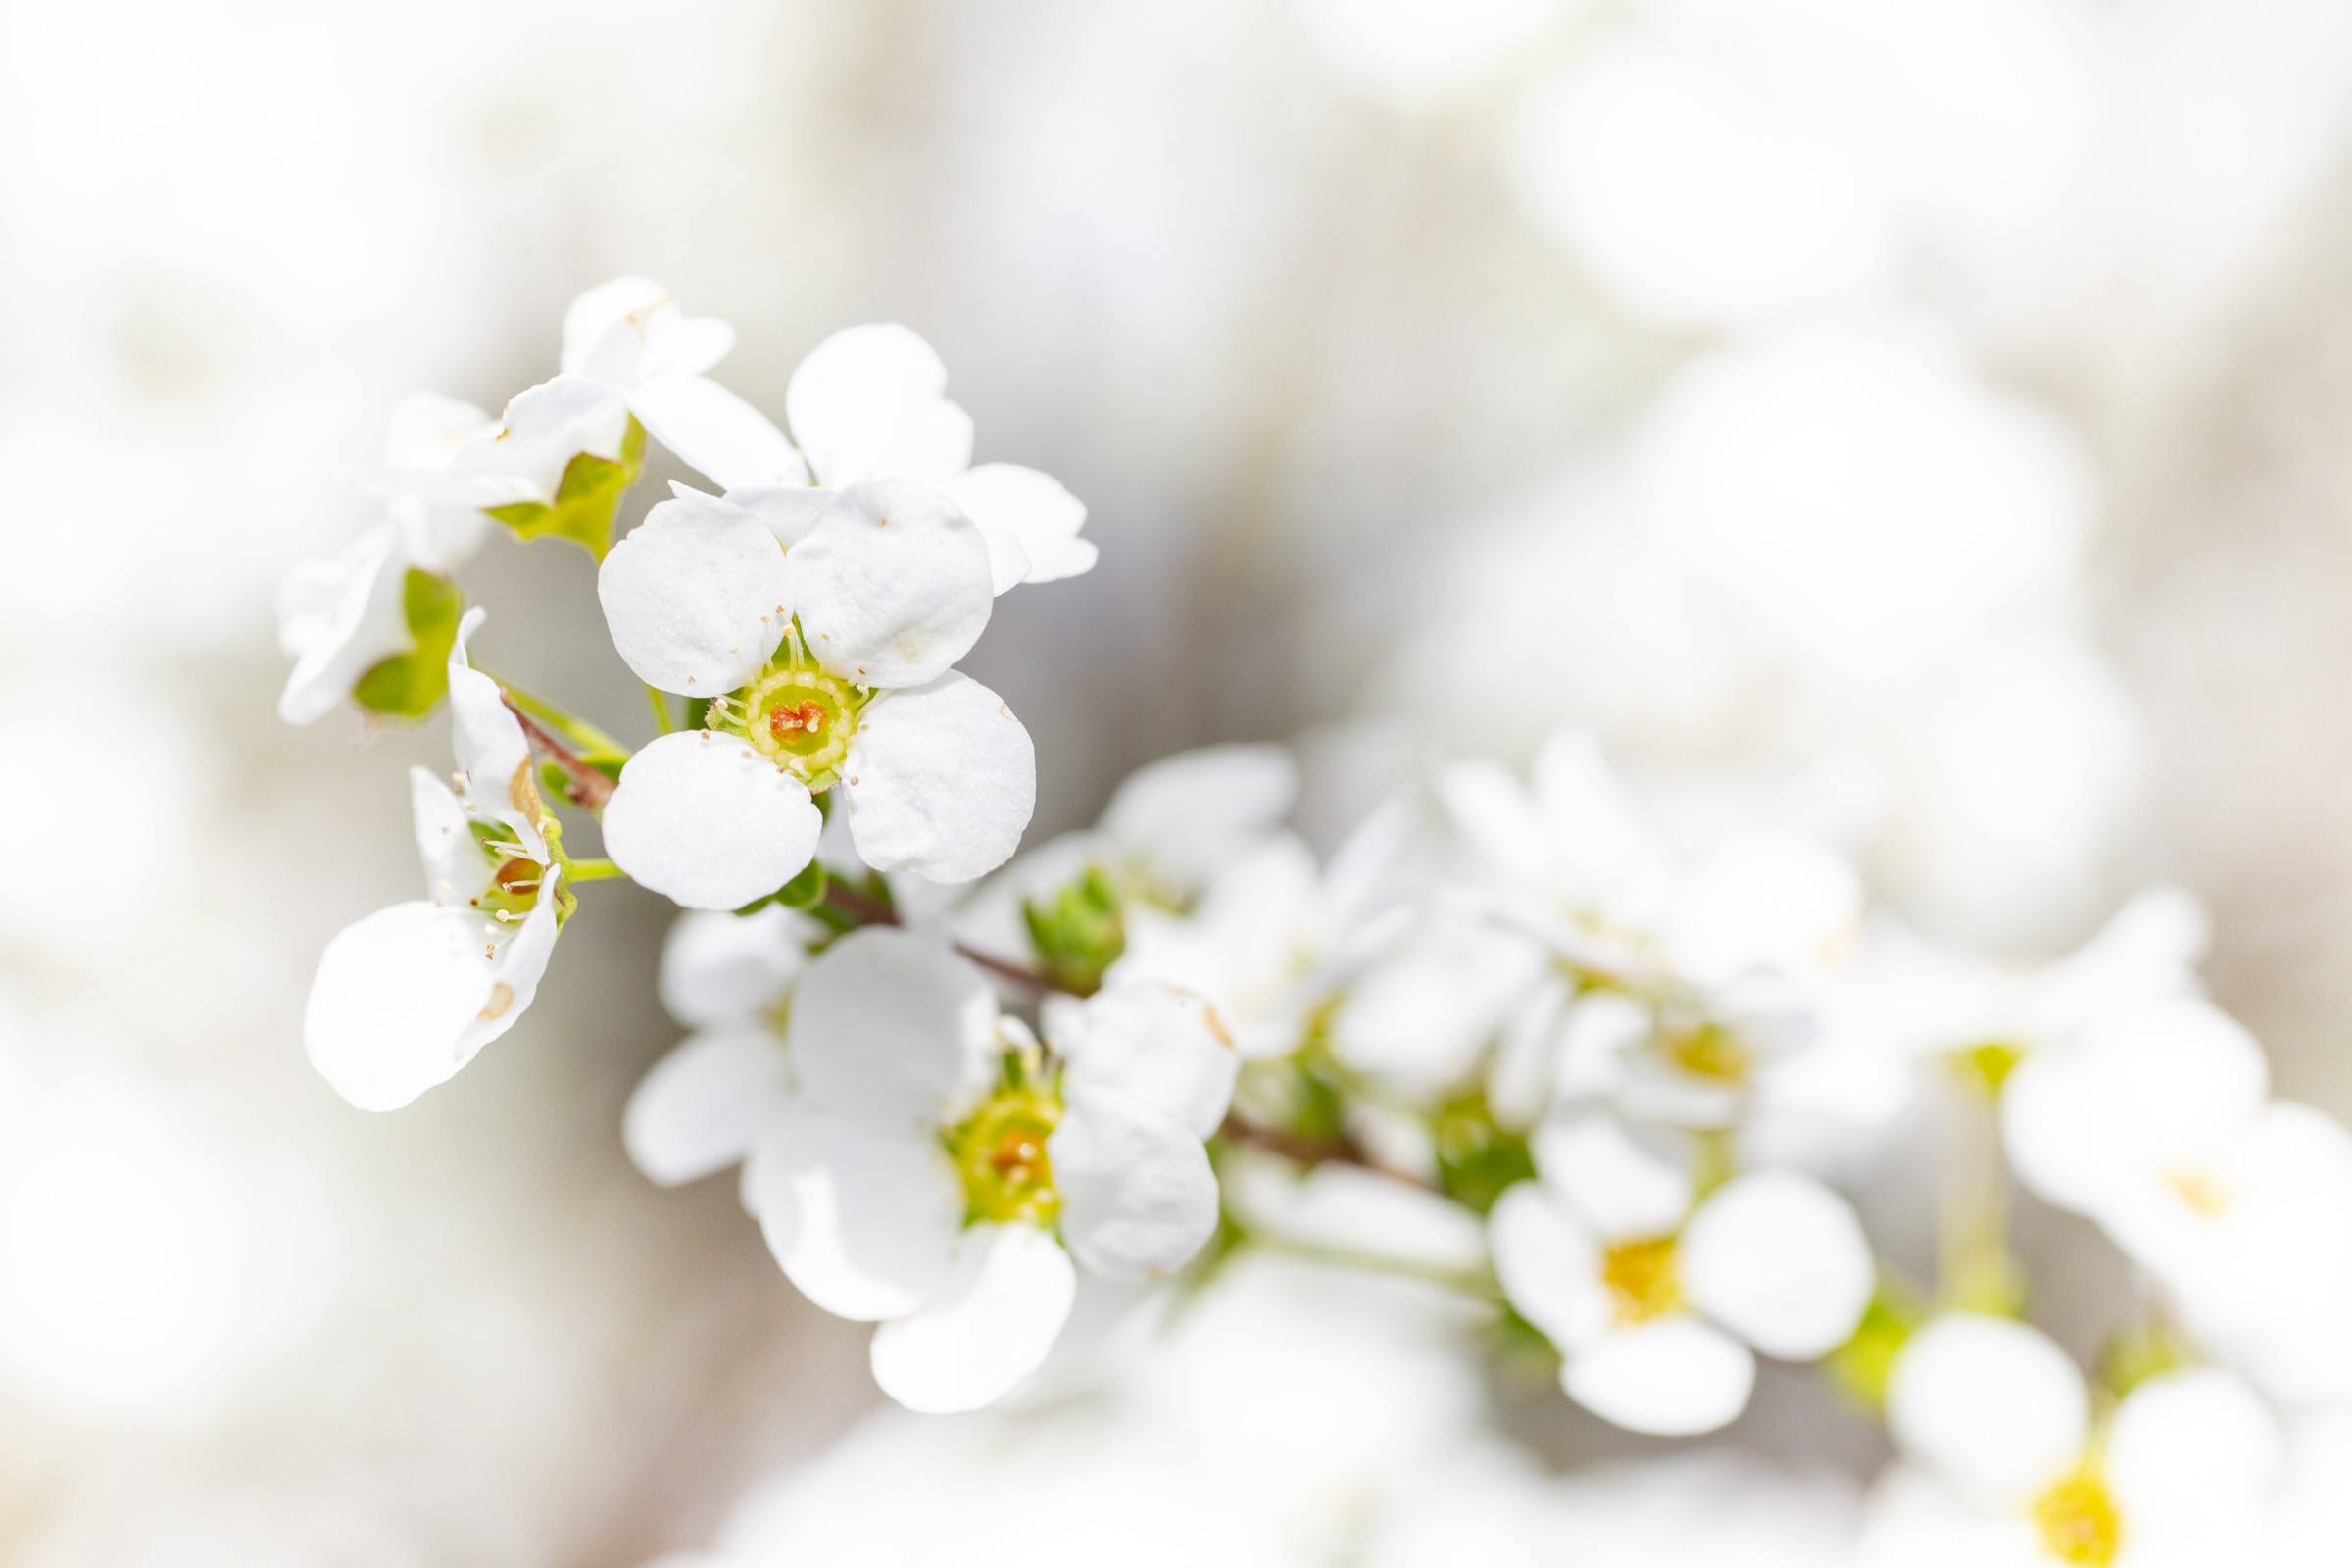 ユキヤナギの花のアップ フリー写真有 イメージガレージ